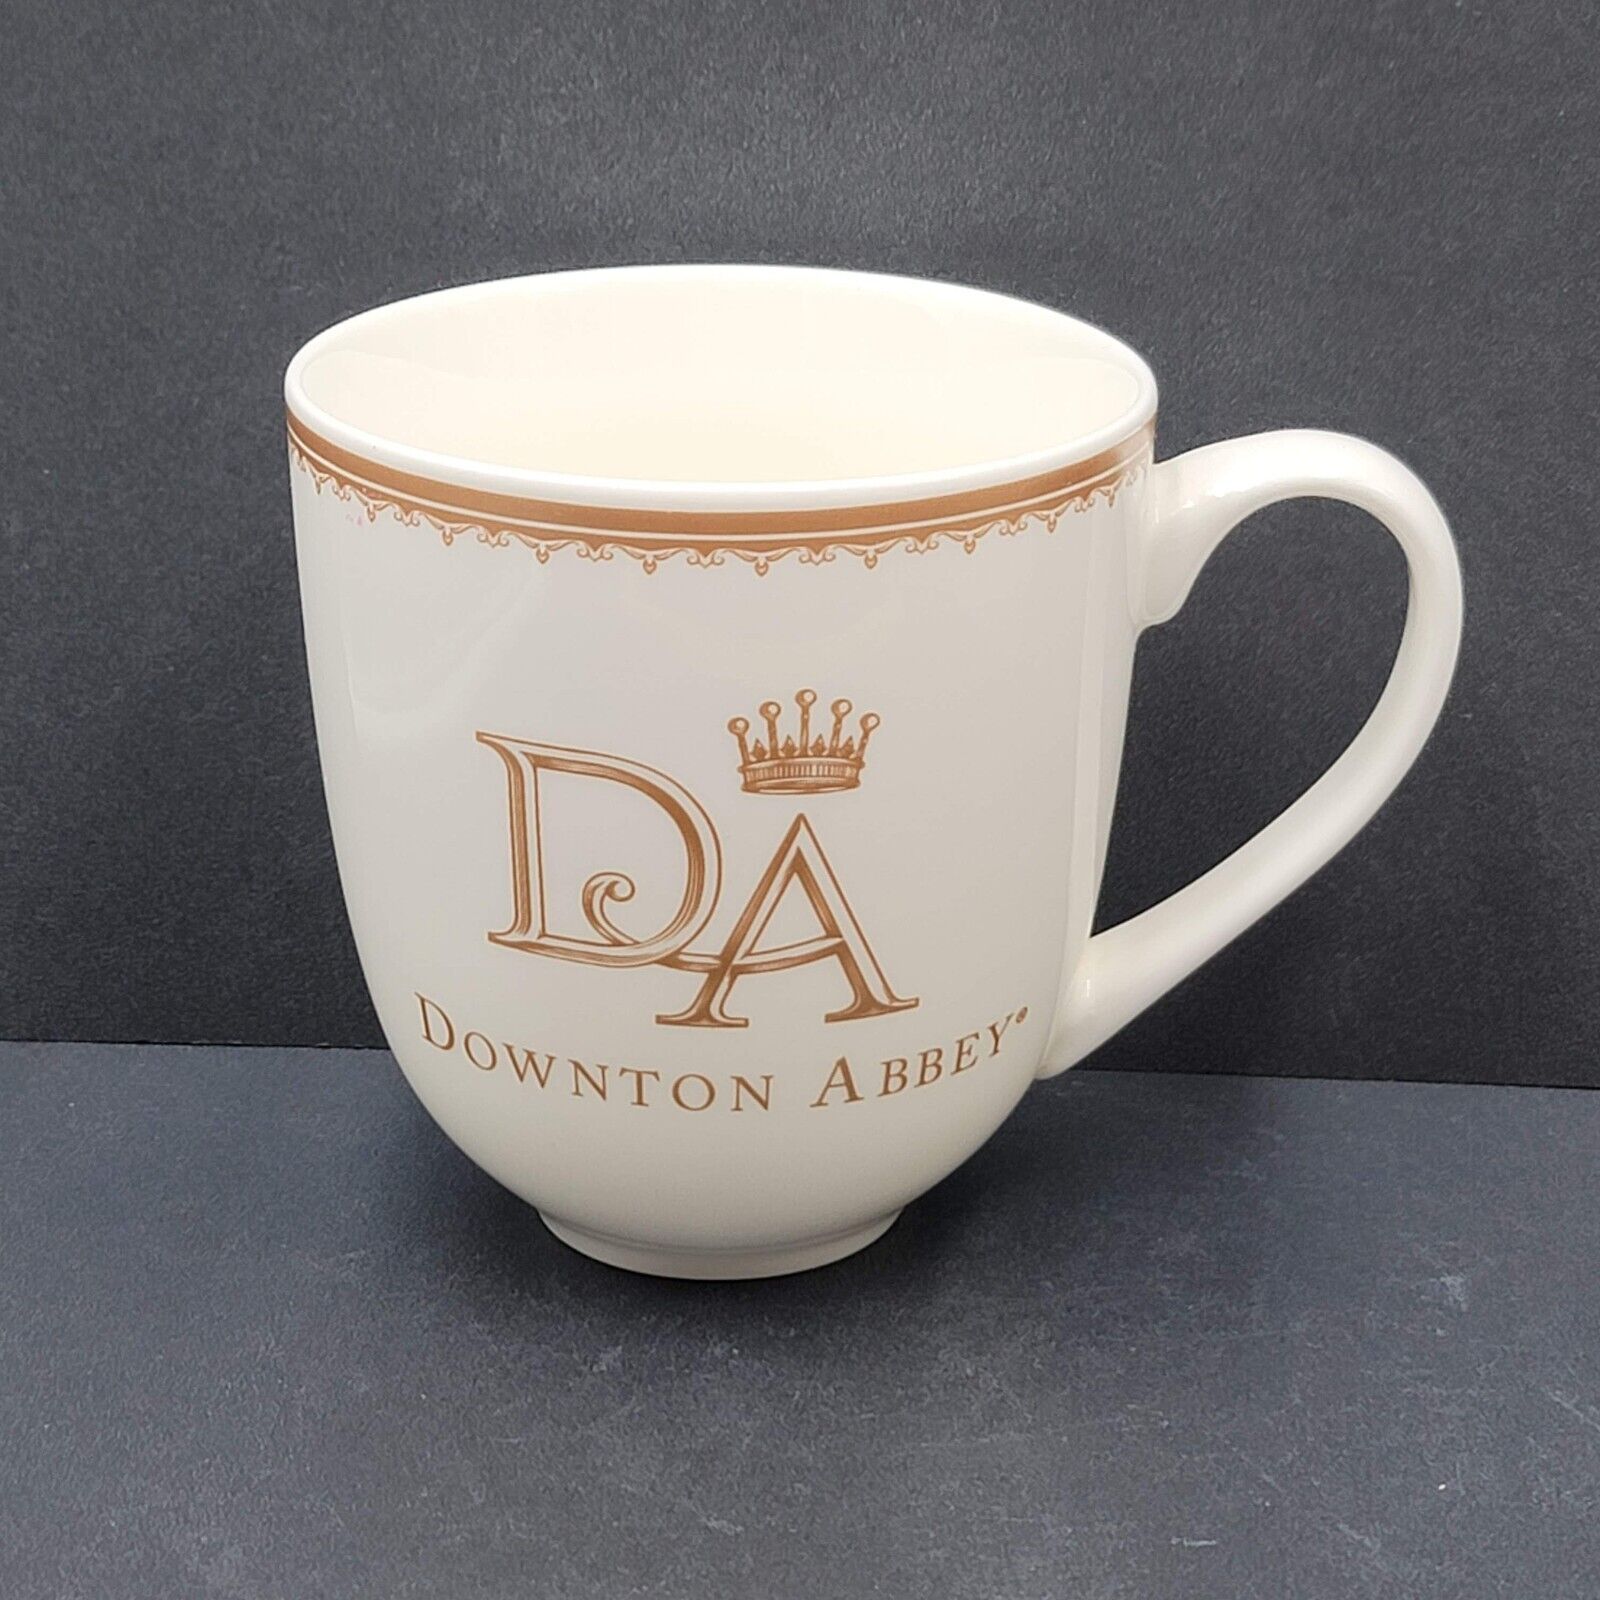 Downton Abbey Coffee Mug 16 oz by World Market Souvenir Cup White Gold